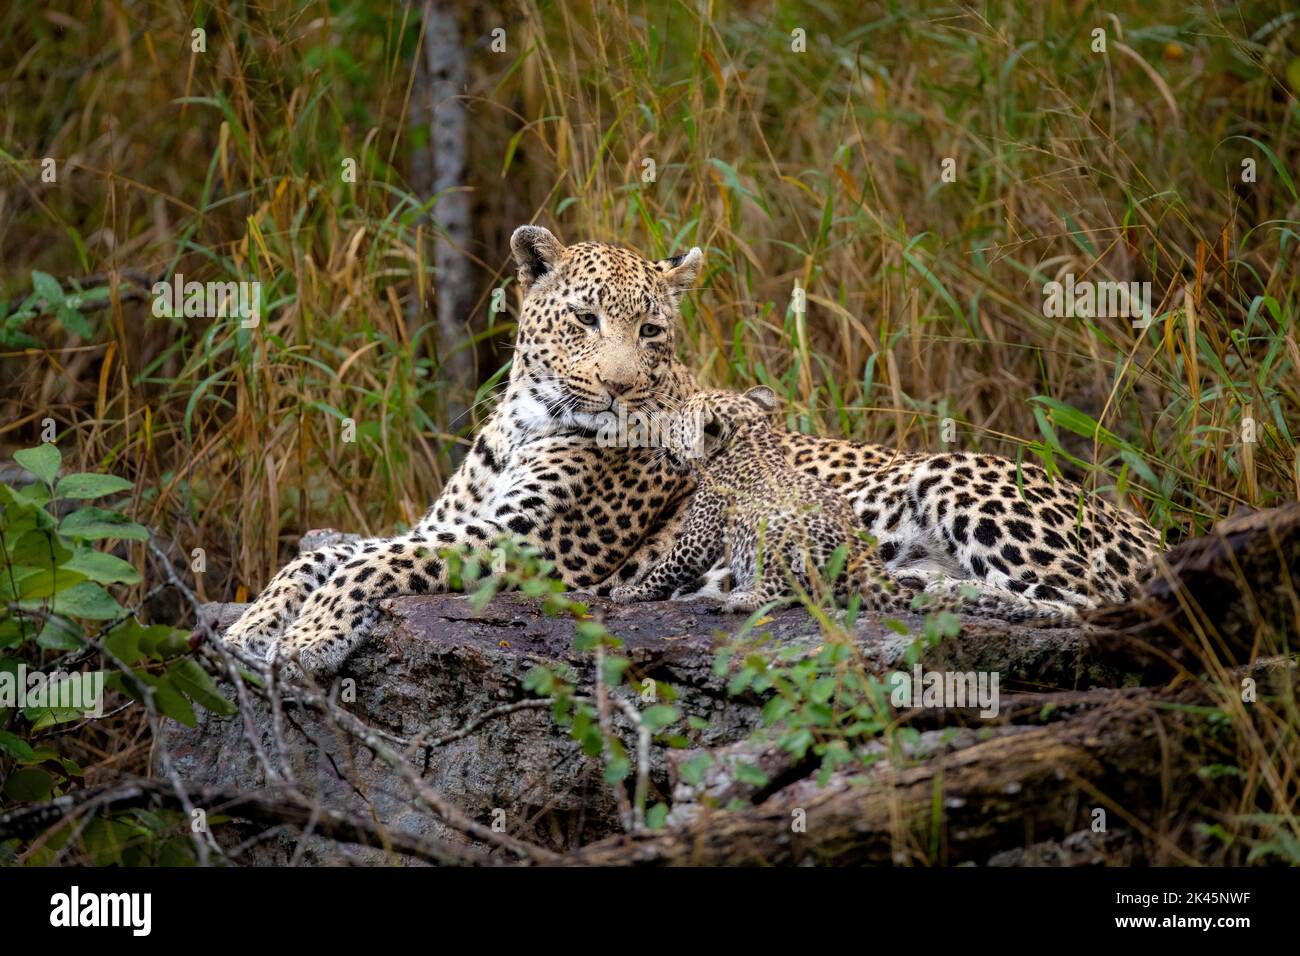 Une femelle léopard et son cub, Panthera pardus, reposent ensemble sur un rondin, le cub met ses pattes sur son visage Banque D'Images